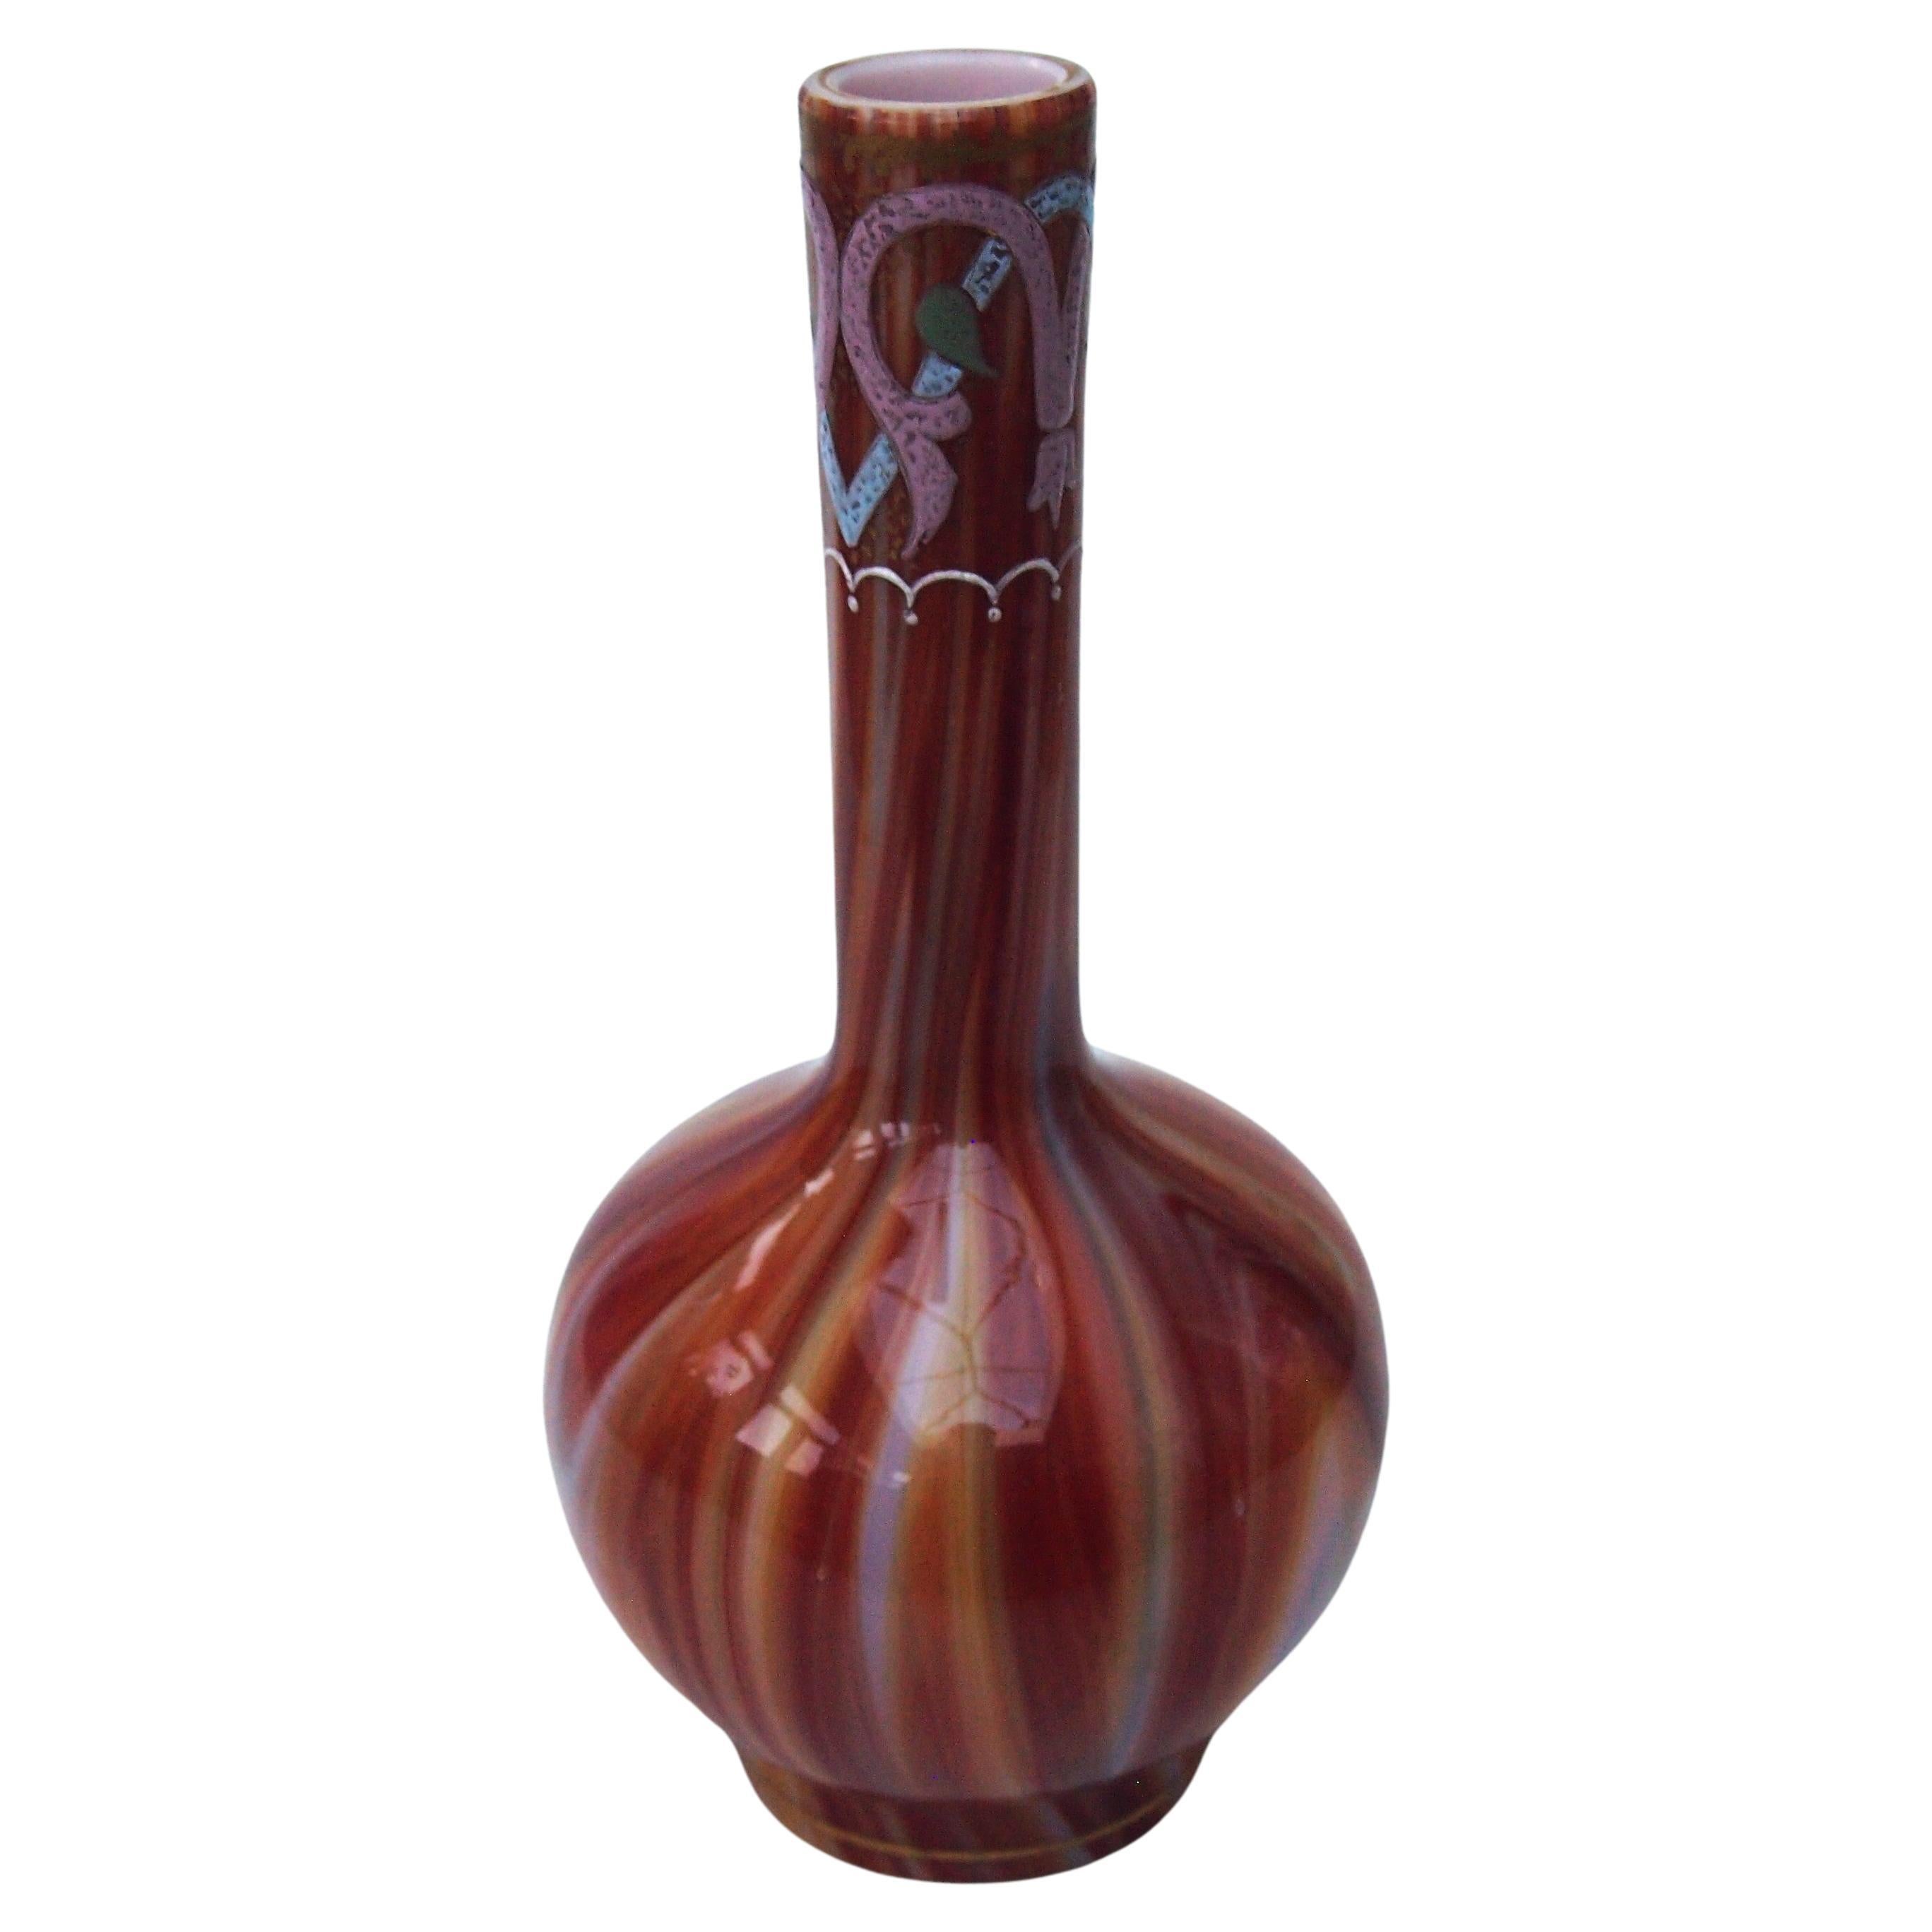 Klassische frühe Loetz Glass 'Onyx' Vase um 1887 für den islamischen Markt hergestellt